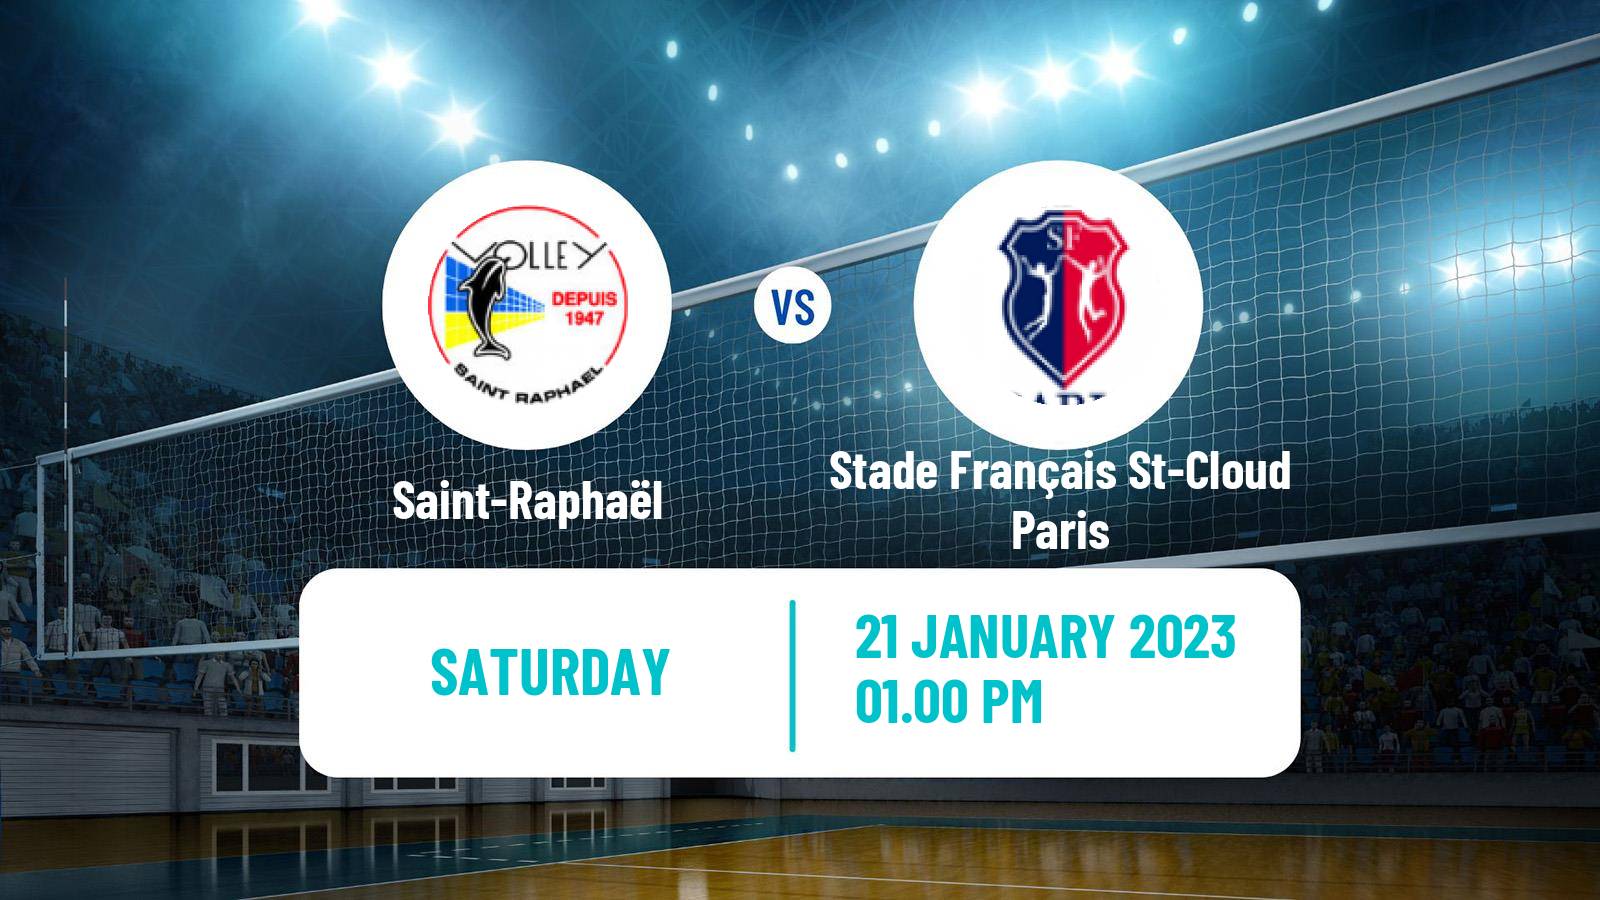 Volleyball French Ligue A Volleyball Women Saint-Raphaël - Stade Français St-Cloud Paris